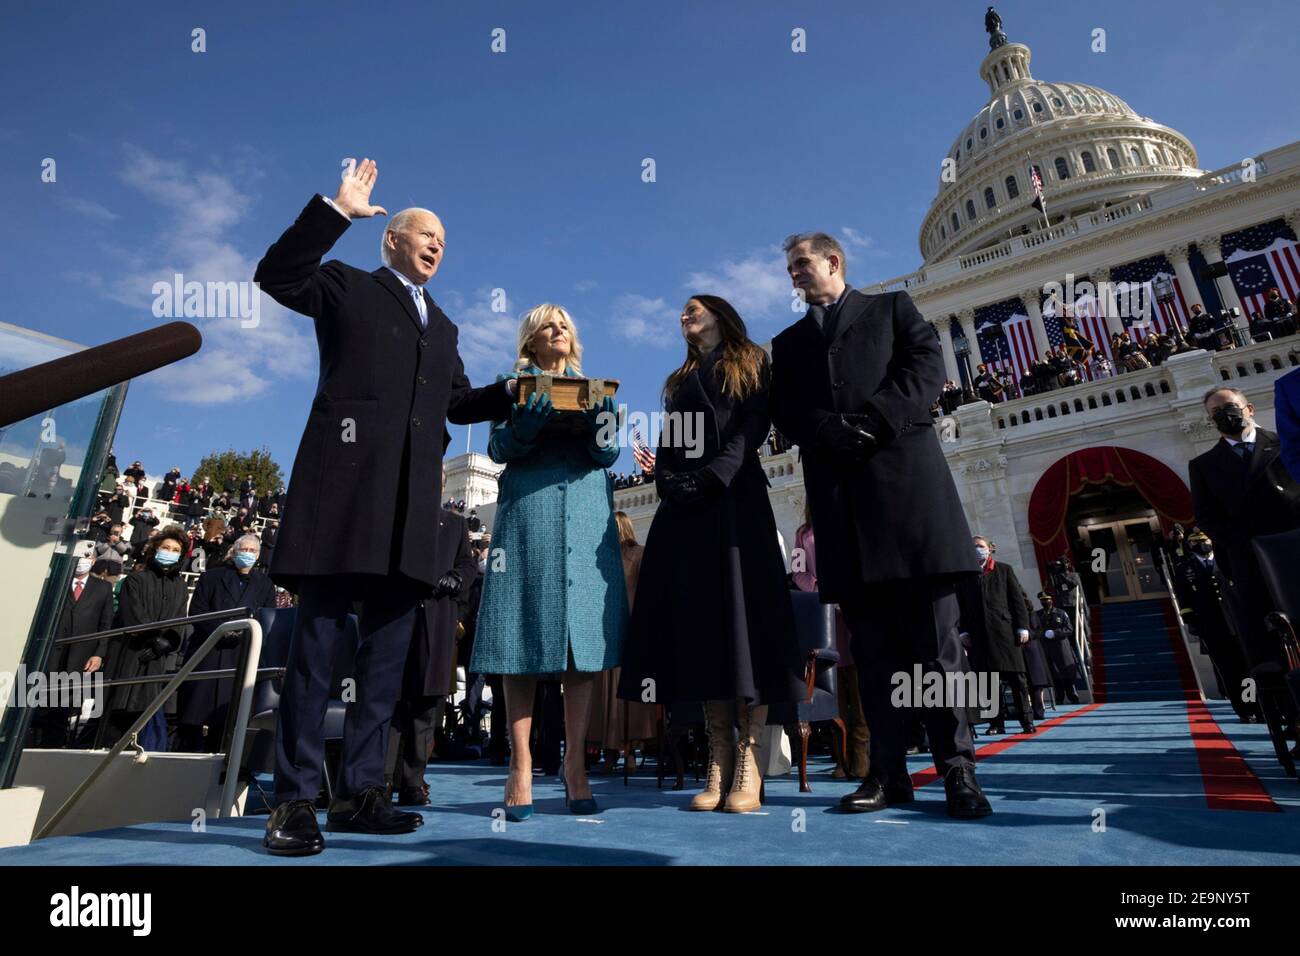 US-Präsident Joe Biden, zusammen mit First Lady Dr. Jill Biden, Ashley Biden und Hunter Biden, wird während der Präsidentenfeierlichkeiten 59th im US-Kapitolgebäude am 20. Januar 2021 in Washington, DC vom Obersten Gerichtshof John Roberts als Präsident der Vereinigten Staaten vereidigt. Stockfoto